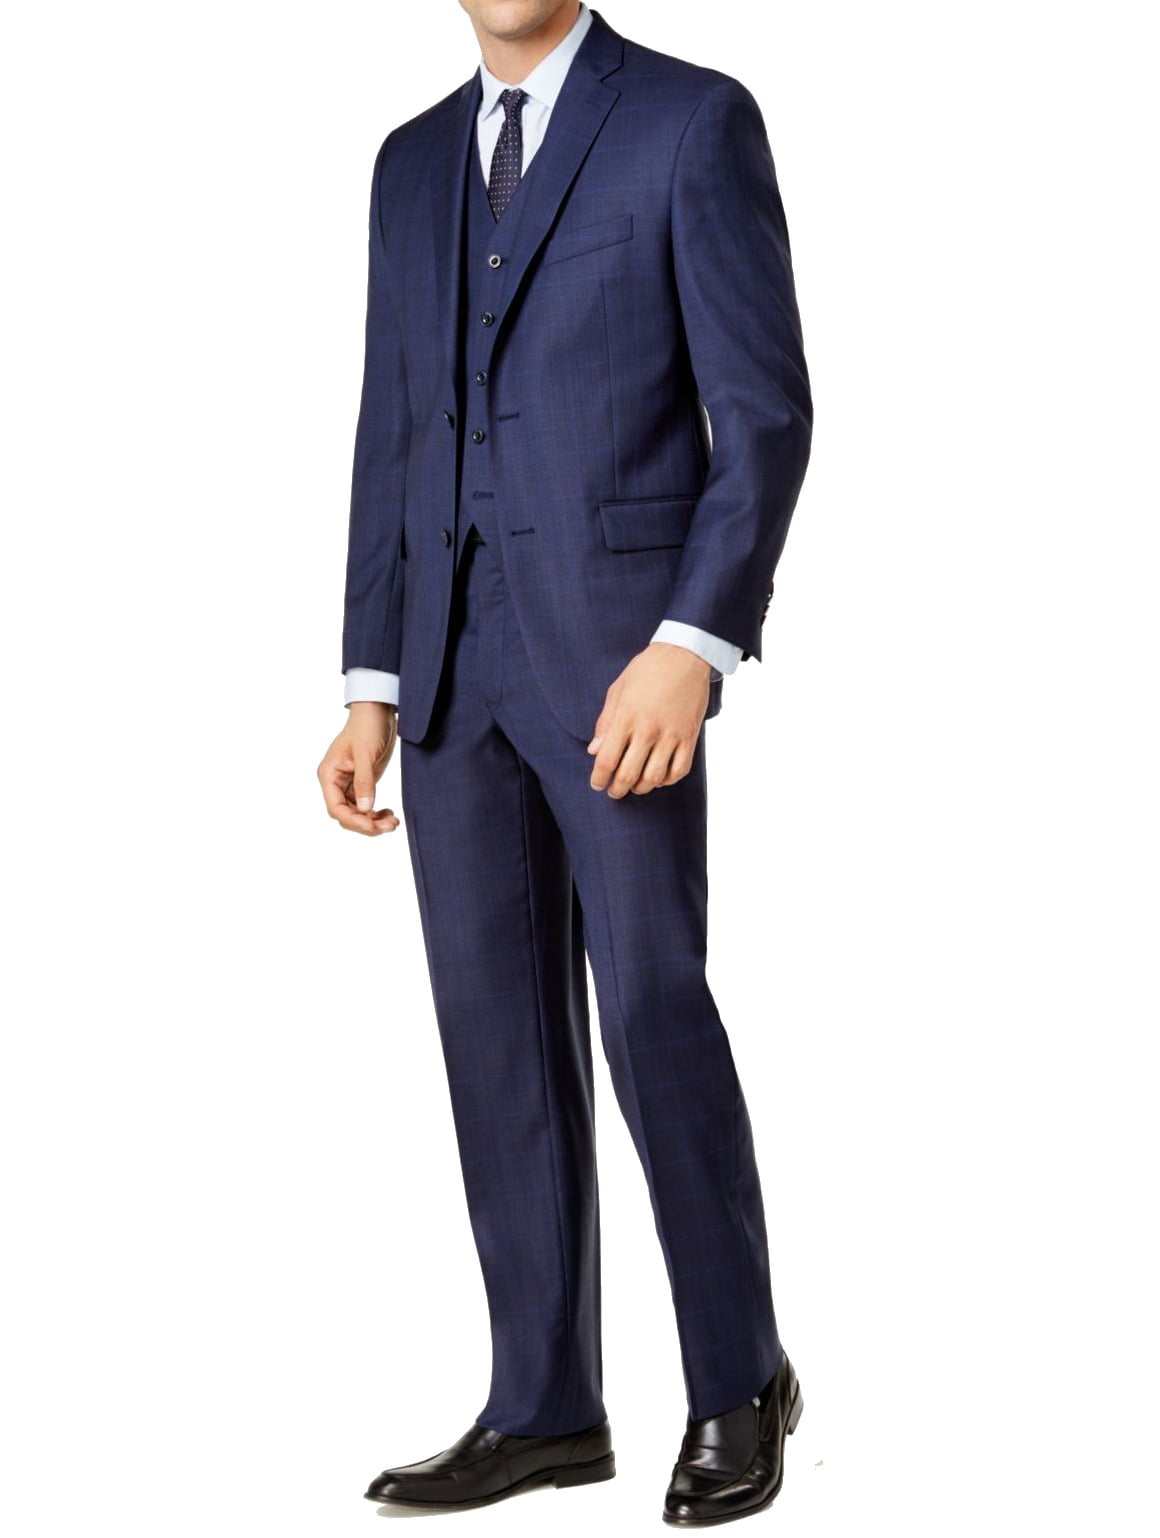 Michael Kors Suits & Suit Separates - Michael Kors Men Short Plaid Two ...